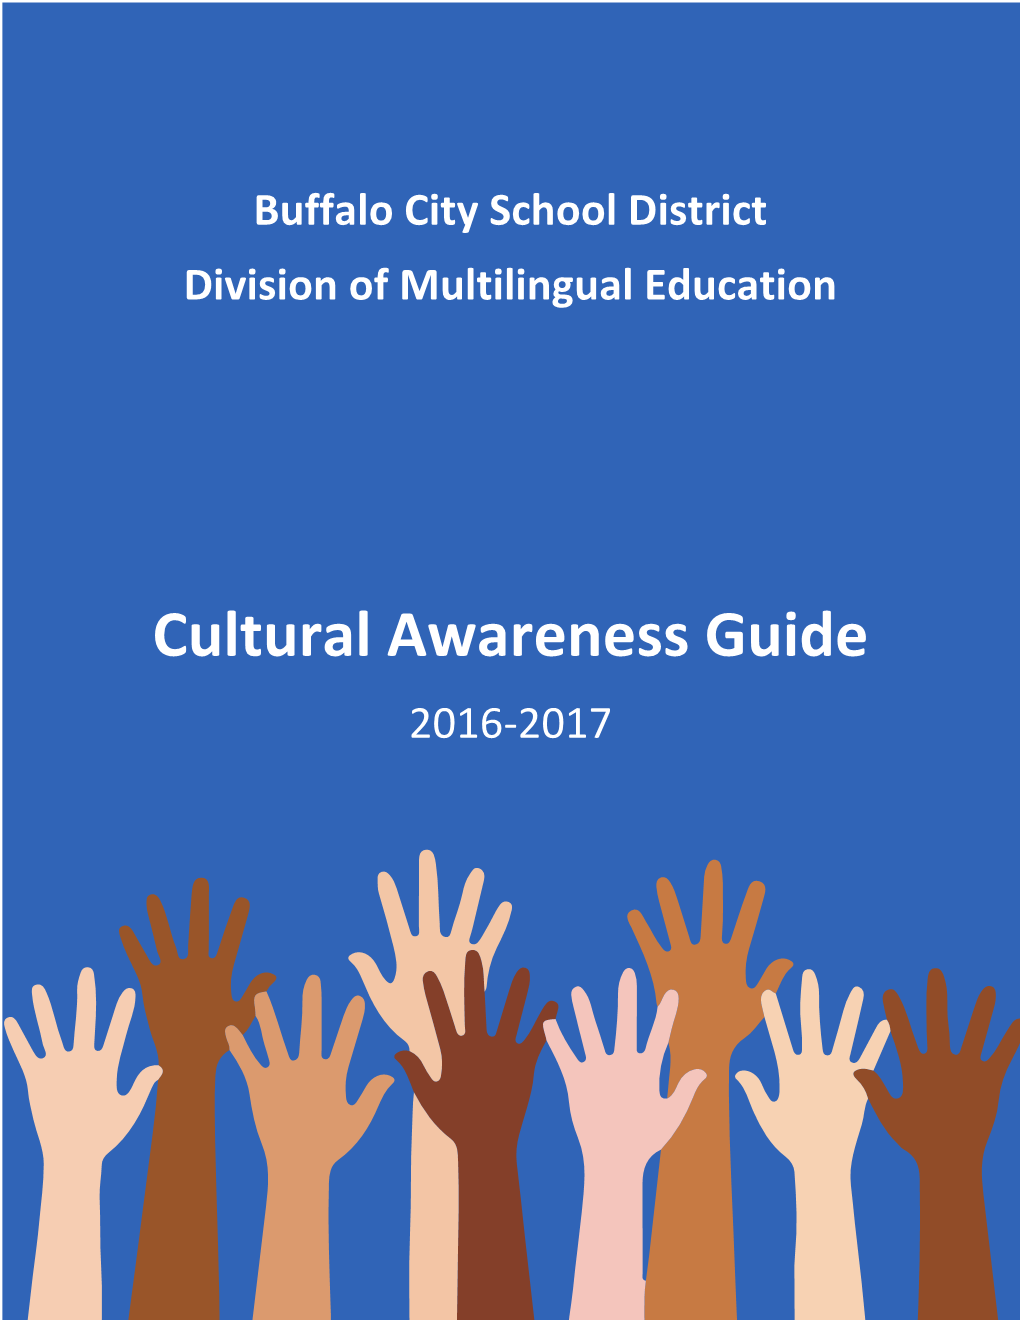 Cultural Awareness Guide 2016-2017